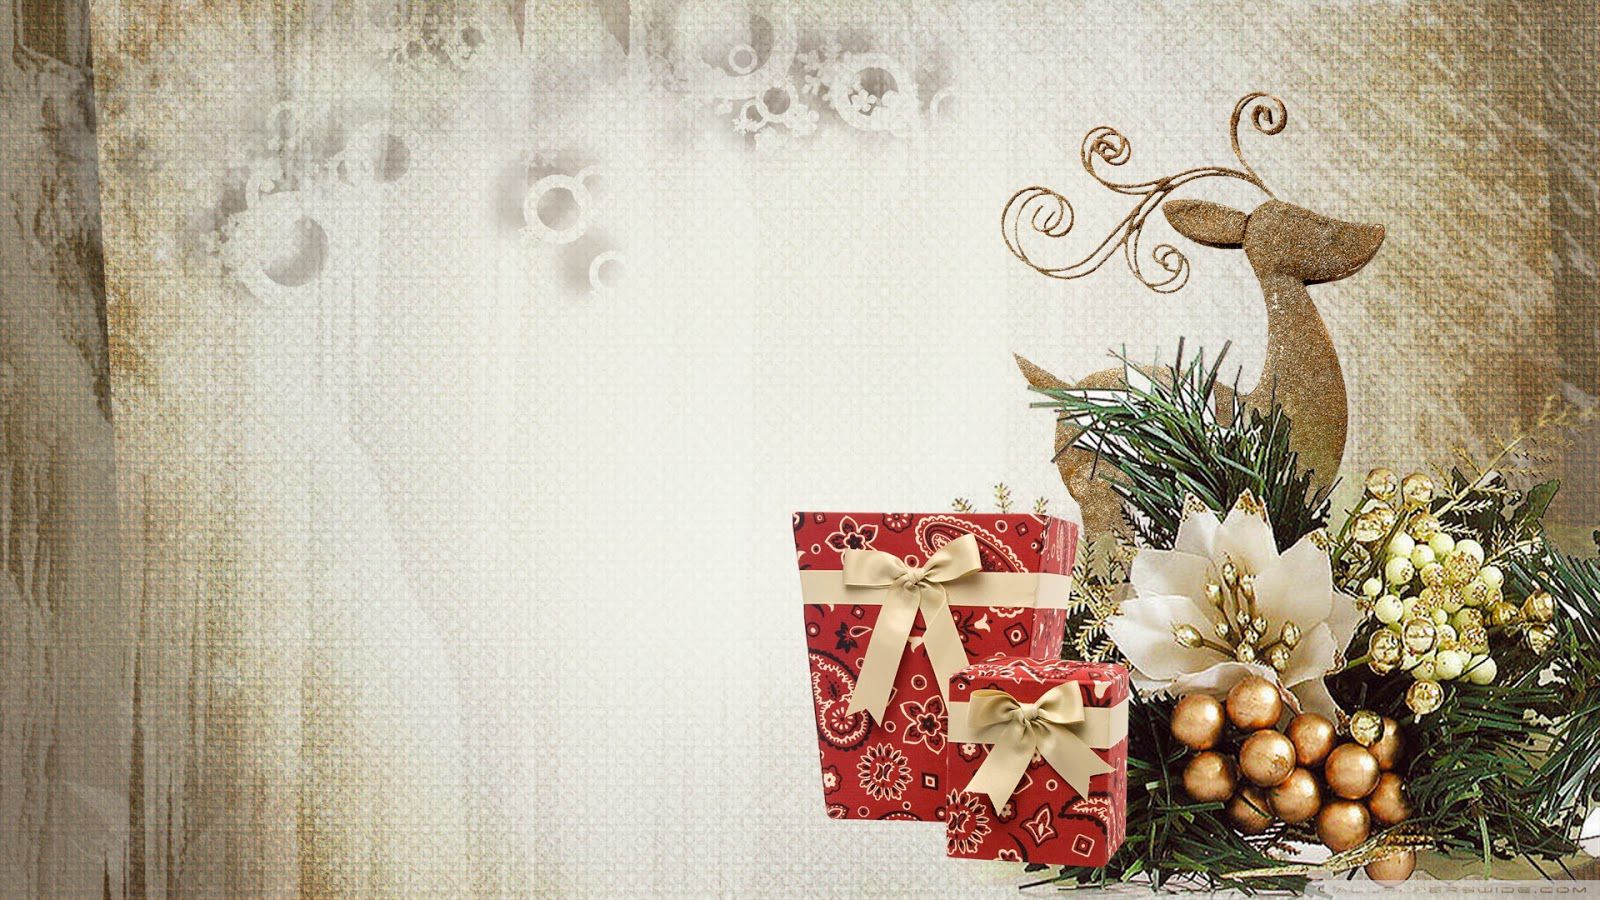 Elegant HD Wallpaper Of Christmas For Mobile Desktop